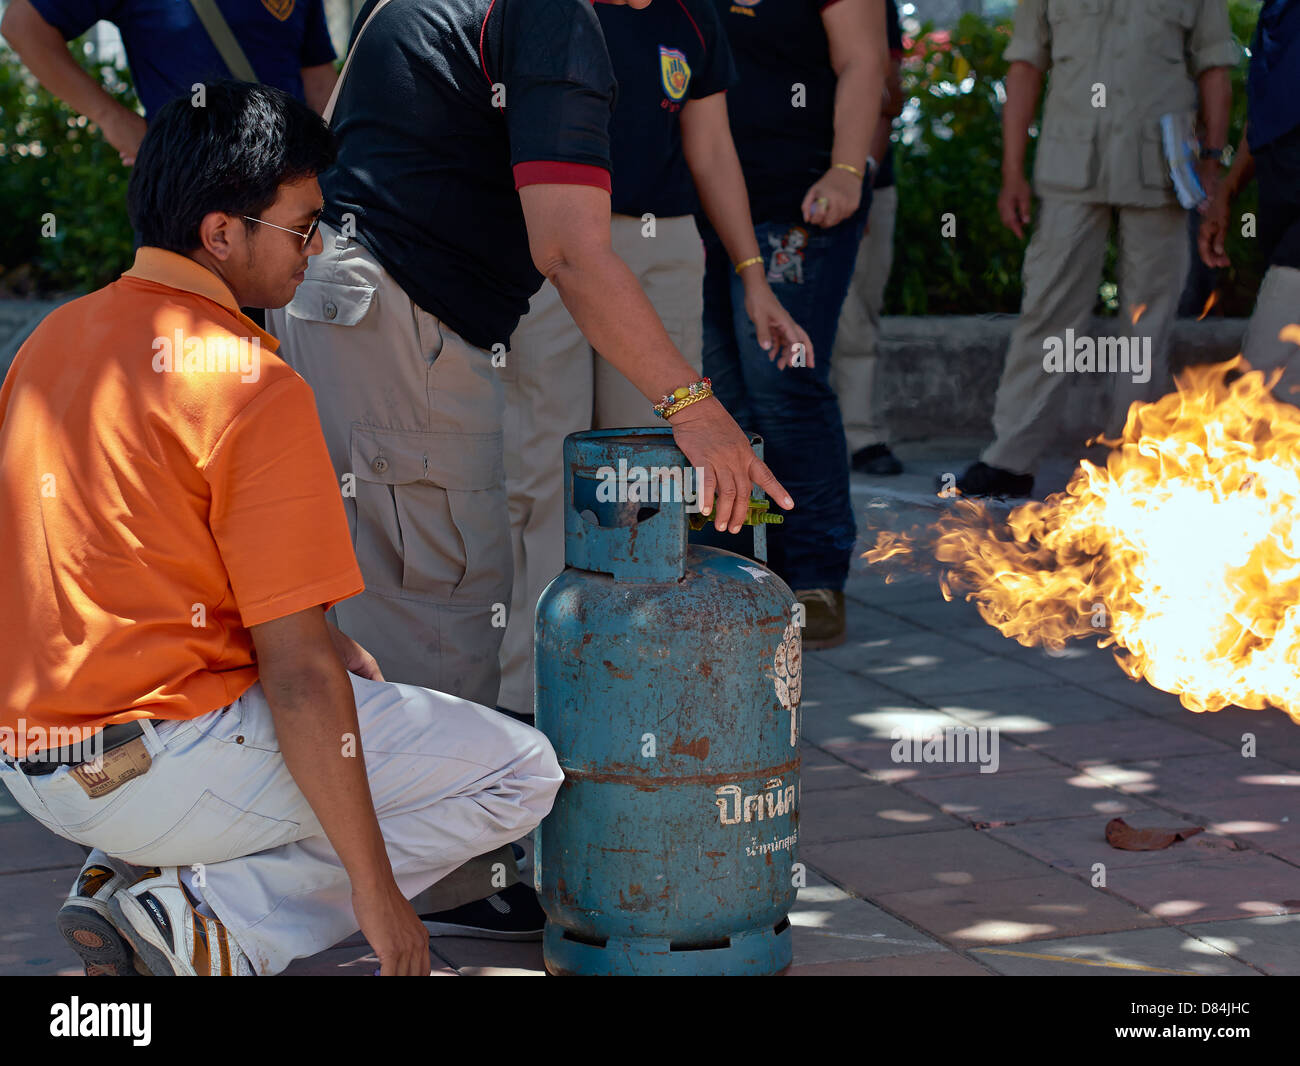 Formation sur la sécurité incendie des appareils domestiques.un agent des incendies de Thaïlande démontrant la méthode sûre pour éteindre la flamme d'une bouteille de gaz propane. Banque D'Images